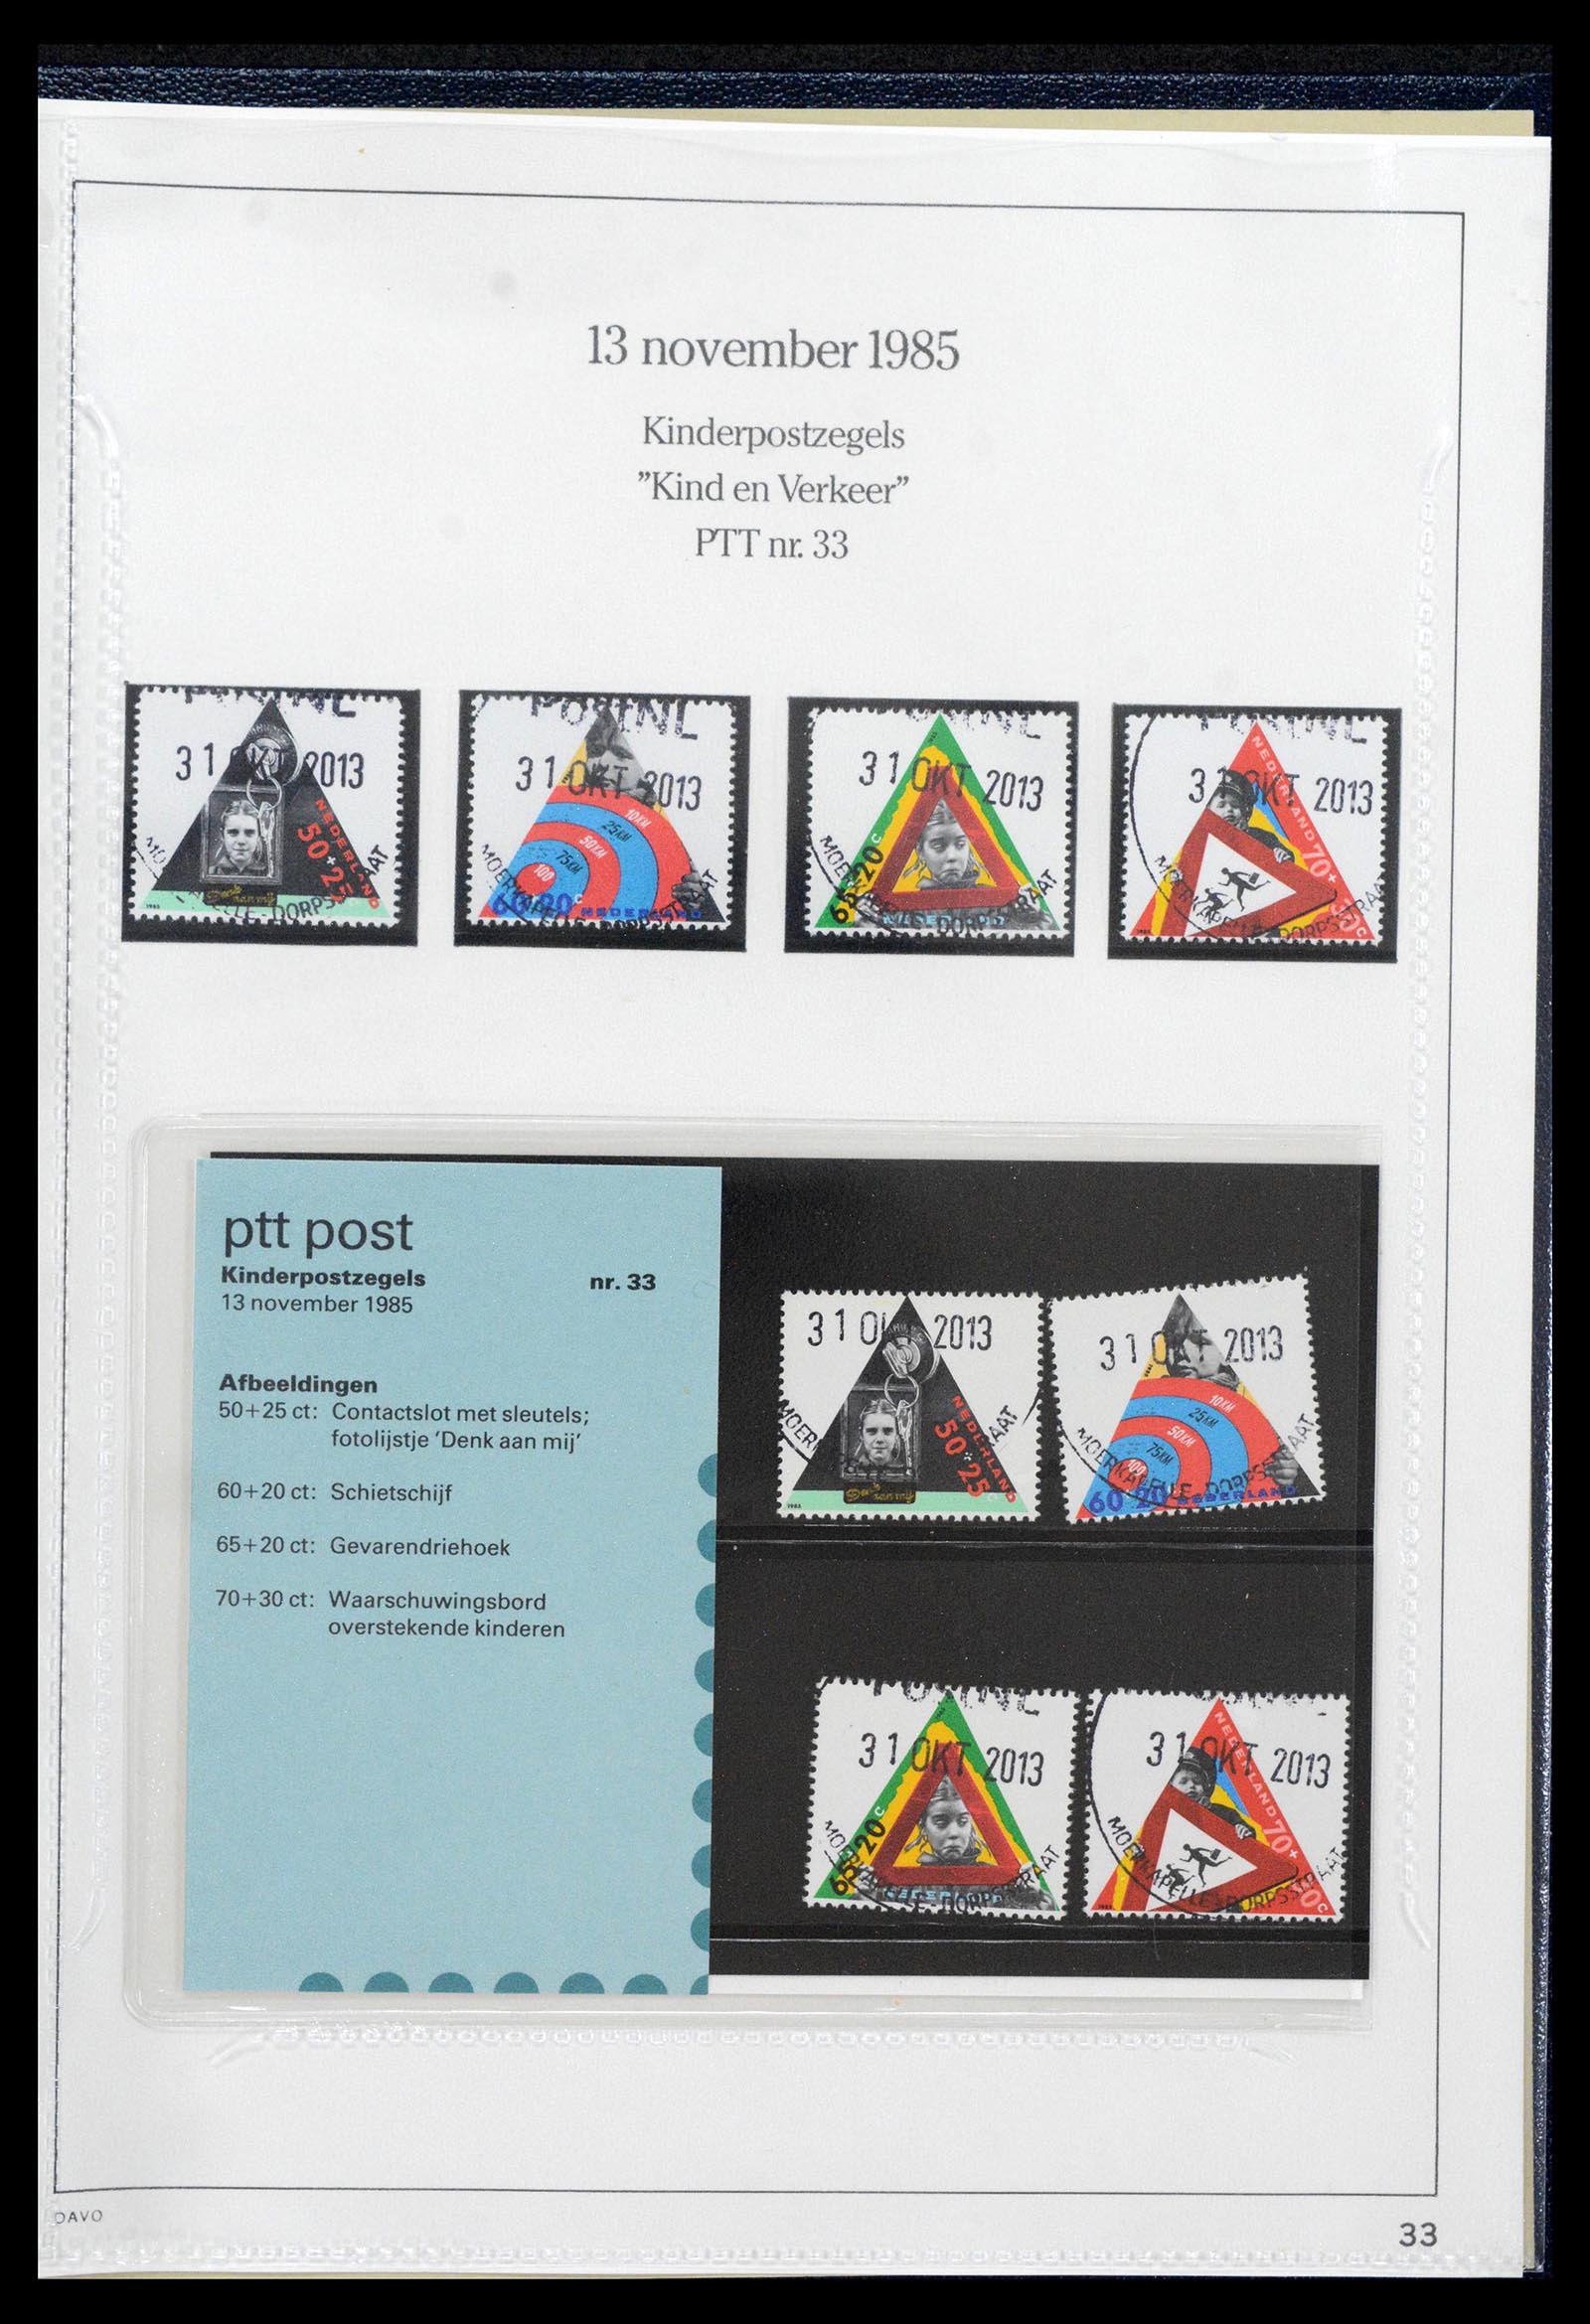 39121 0033 - Stamp collection 39121 Netherlands presentationpacks 1982-2001.